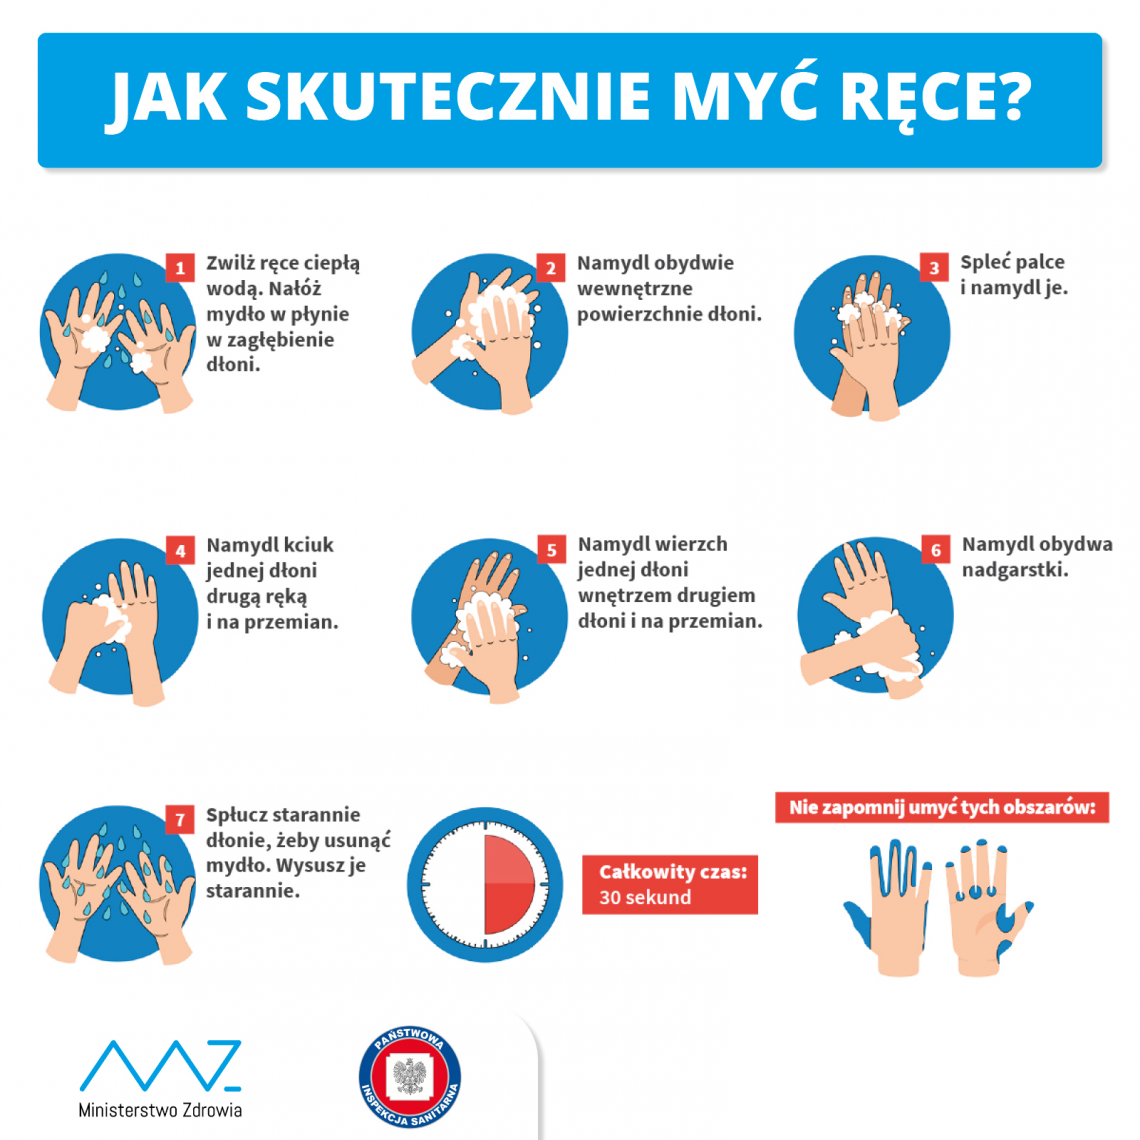 Tekst o prawidłowym myciu rąk podczas pandemii koronawirusa. Na zdjęciu: Plakat z instrukcjami mycia rąk - HelloZdrowie